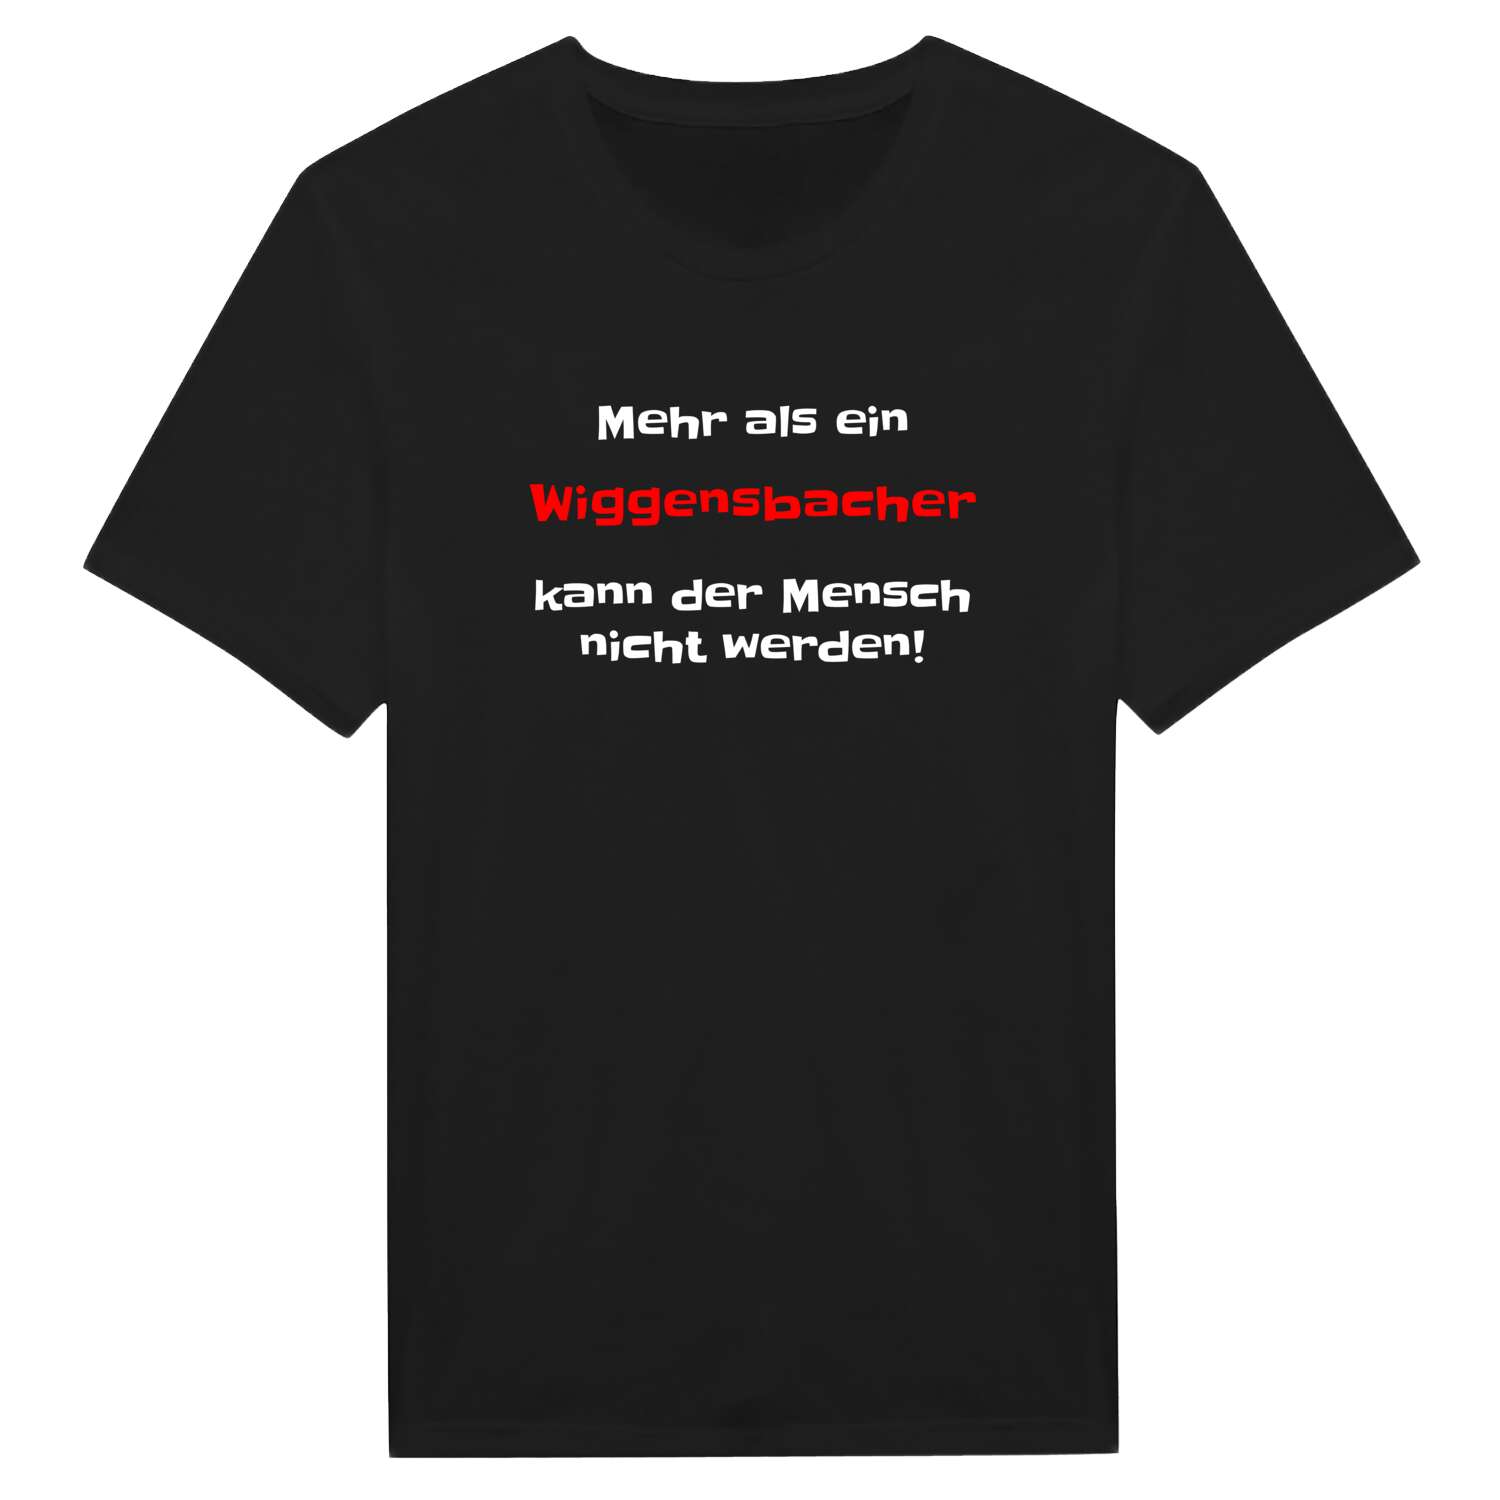 Wiggensbach T-Shirt »Mehr als ein«